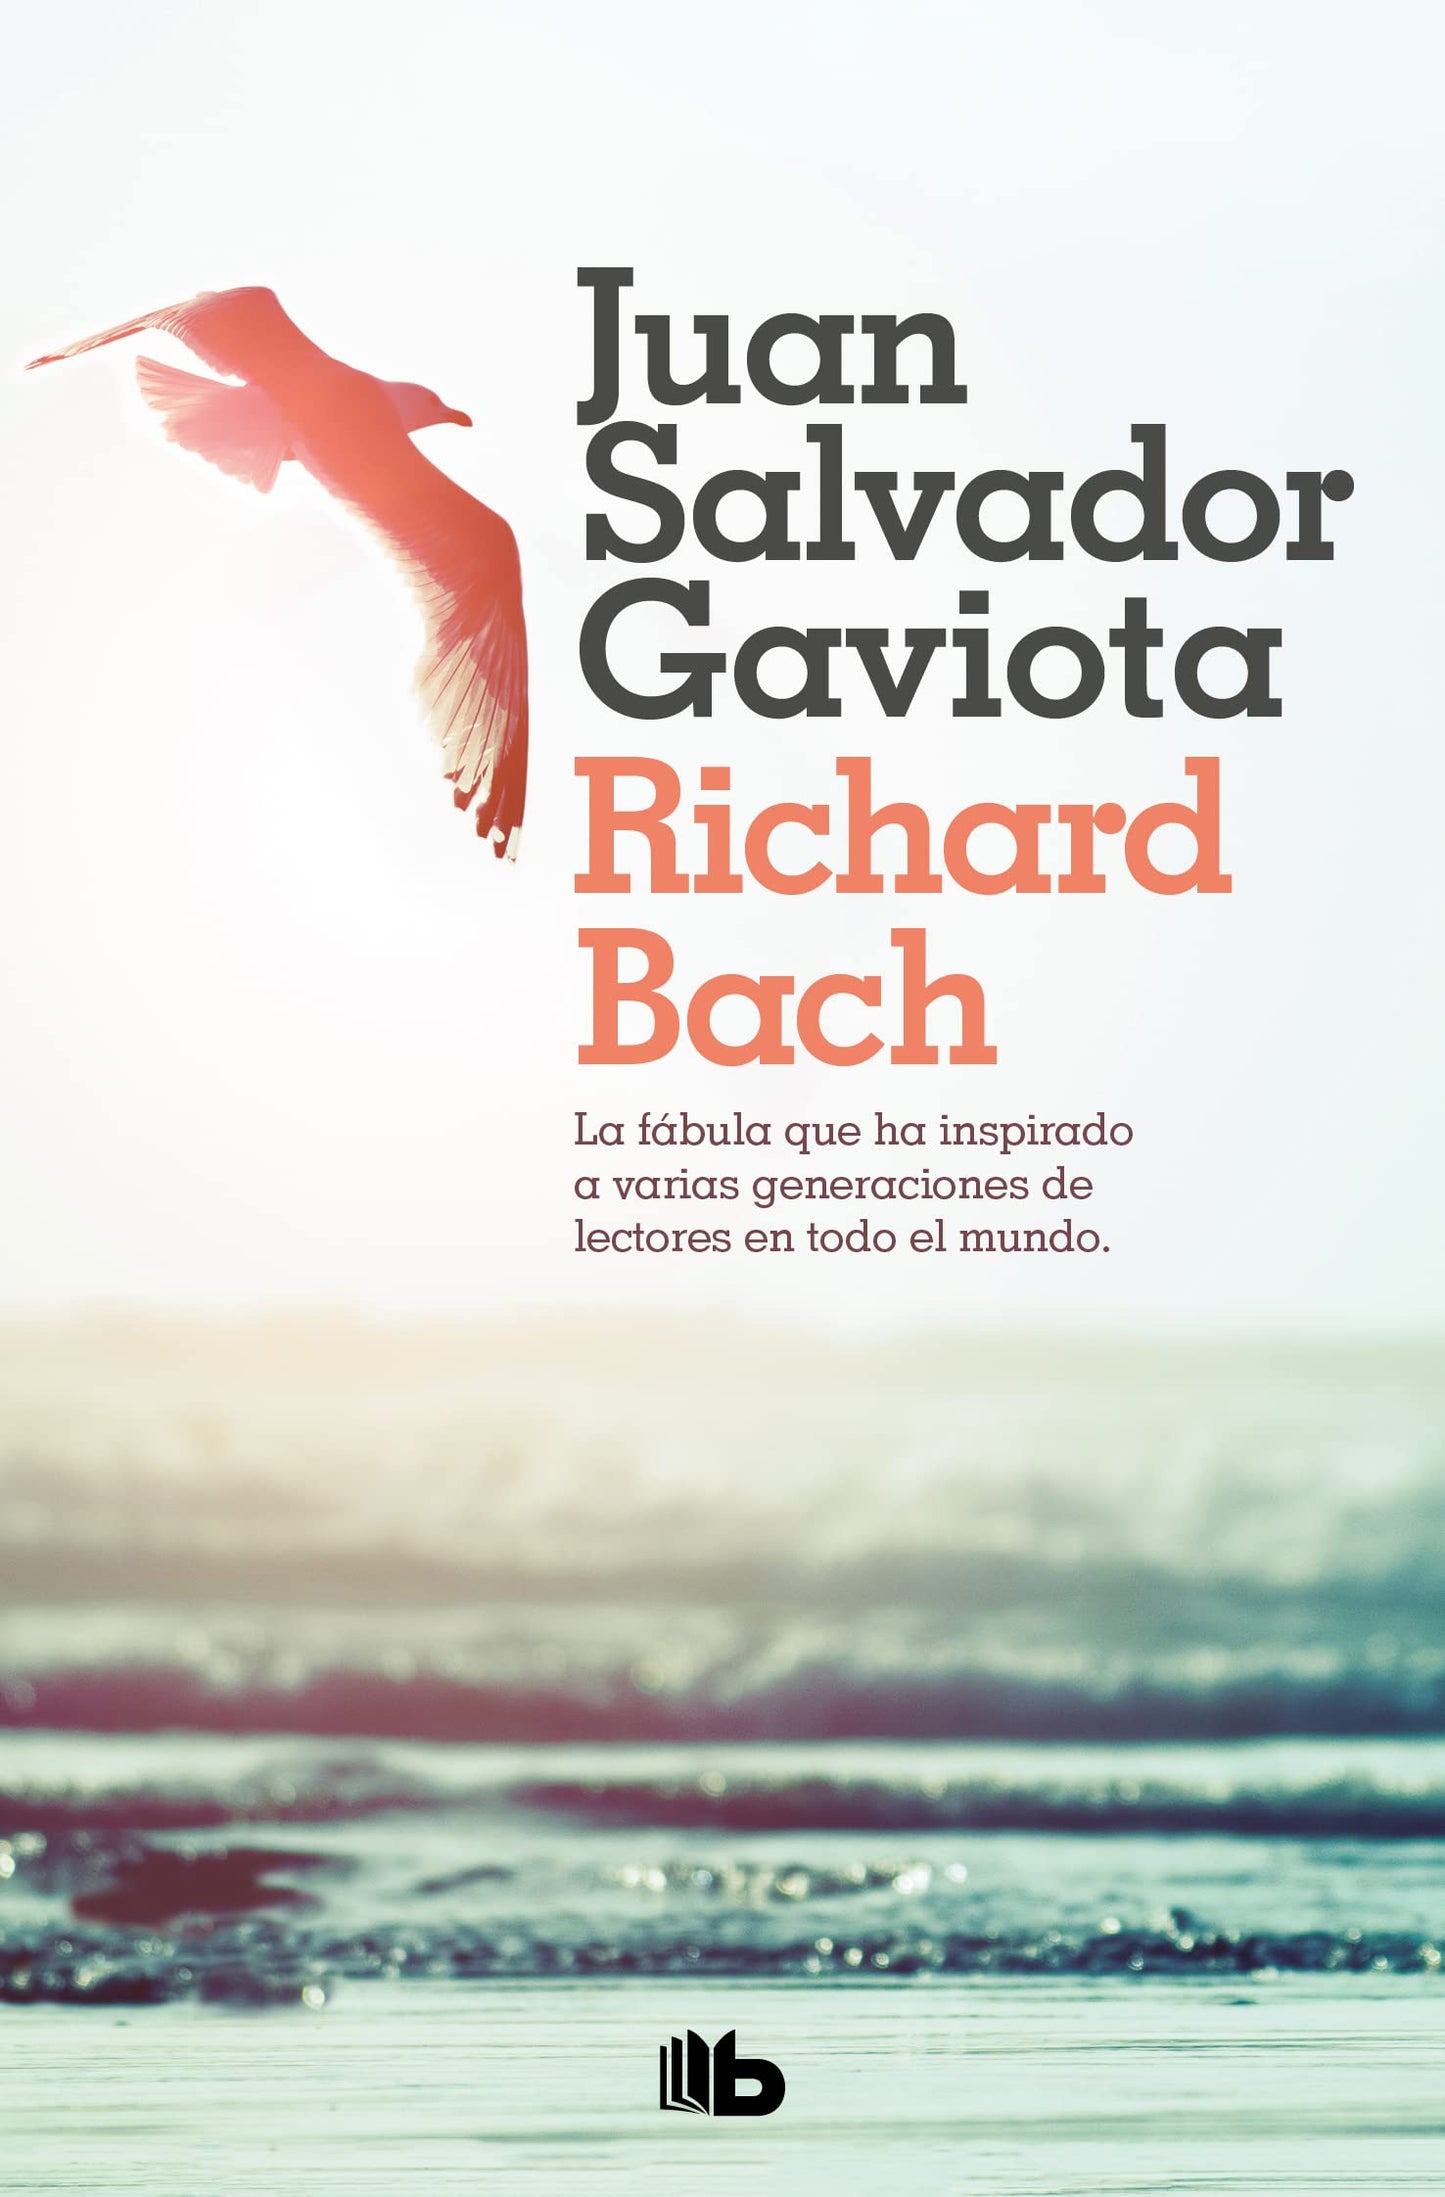 Juan Salvador Gaviota - Richard Bach